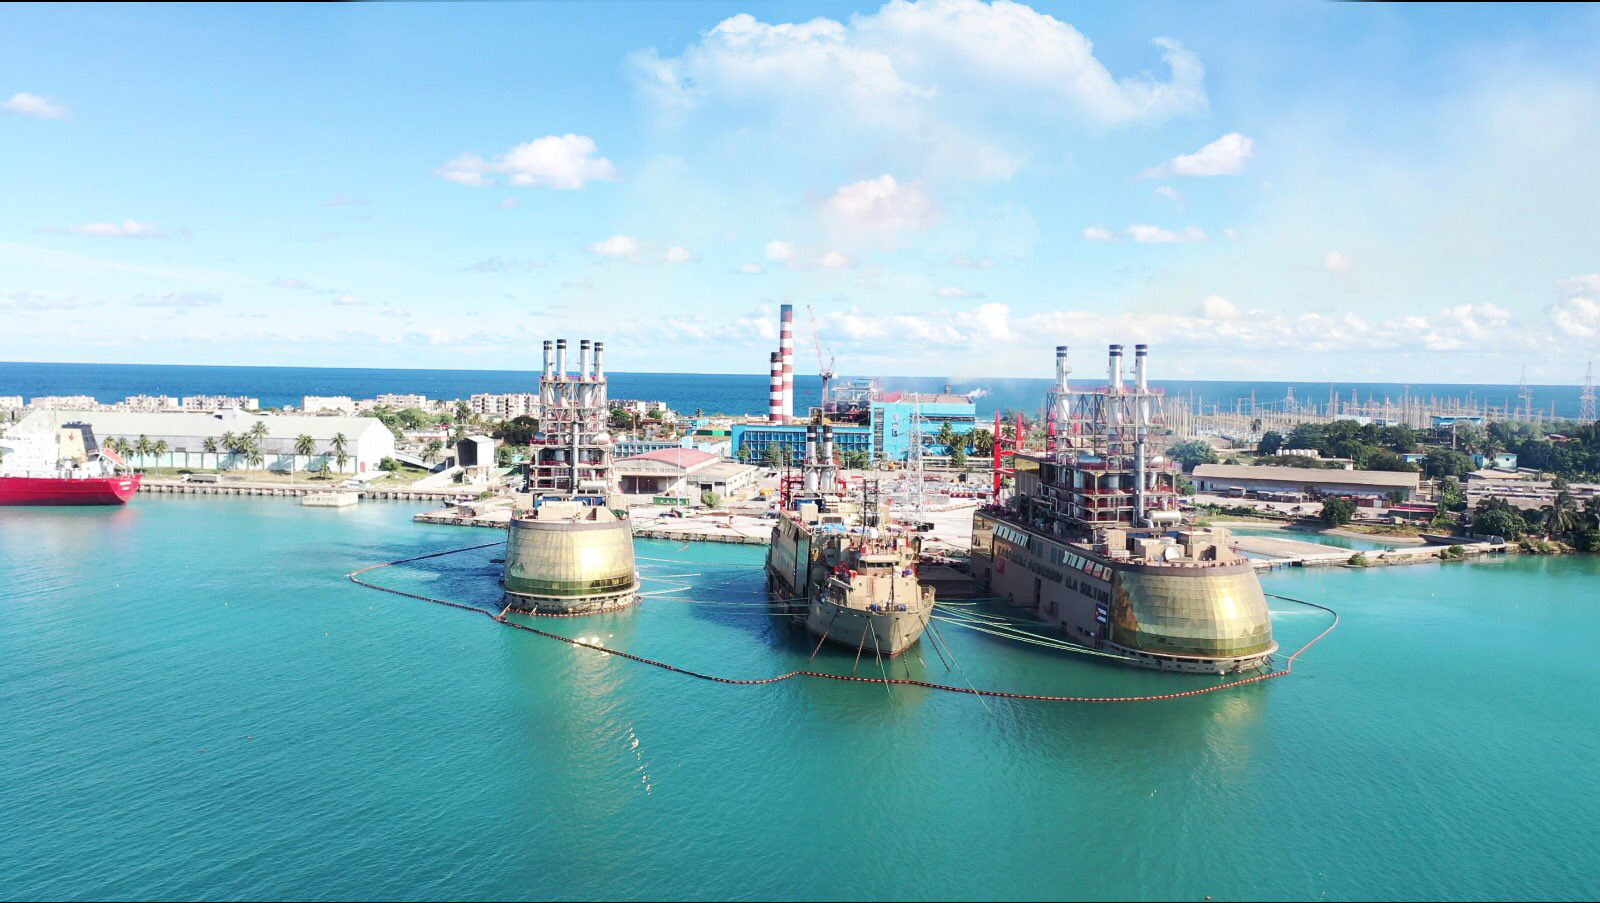 Європа веде переговори, щоб орендувати турецьку плавучу електростанцію. Фото: twitter.com/karpowership